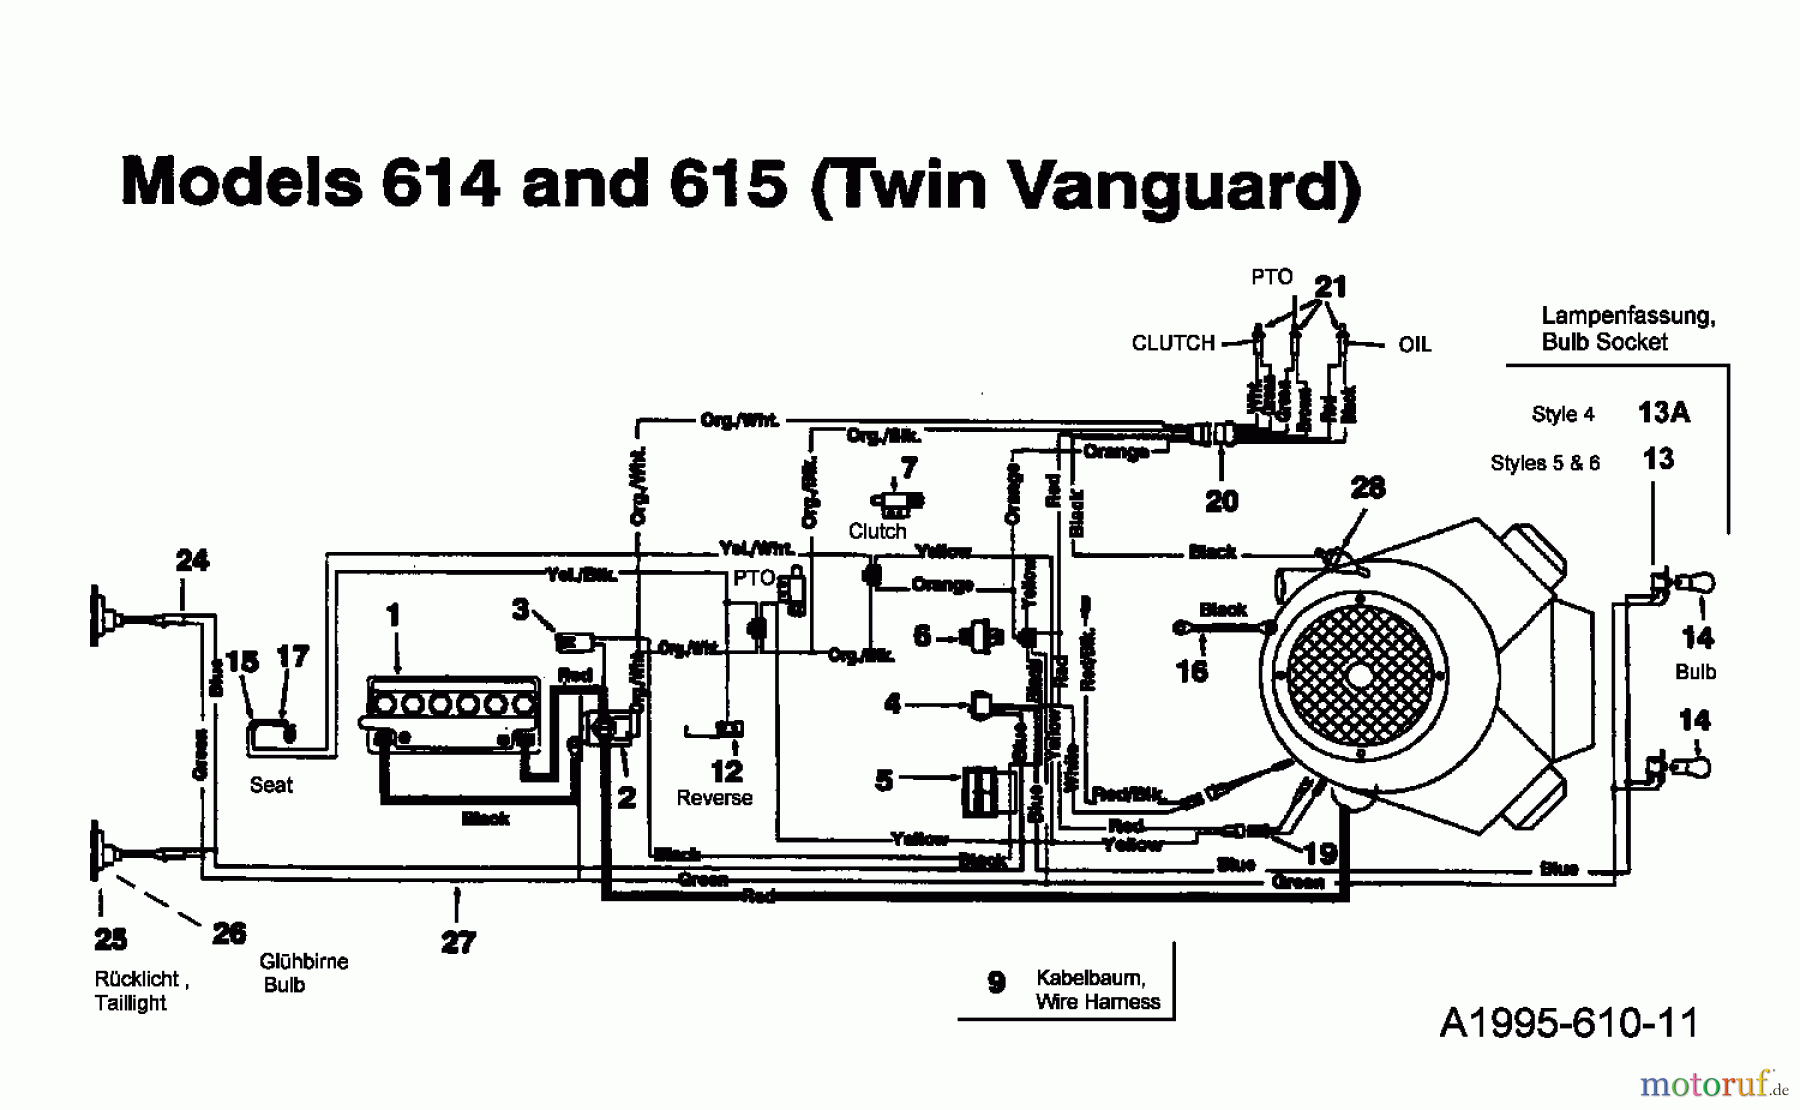  MTD Rasentraktoren 16/107 135T615G678  (1995) Schaltplan Vanguard